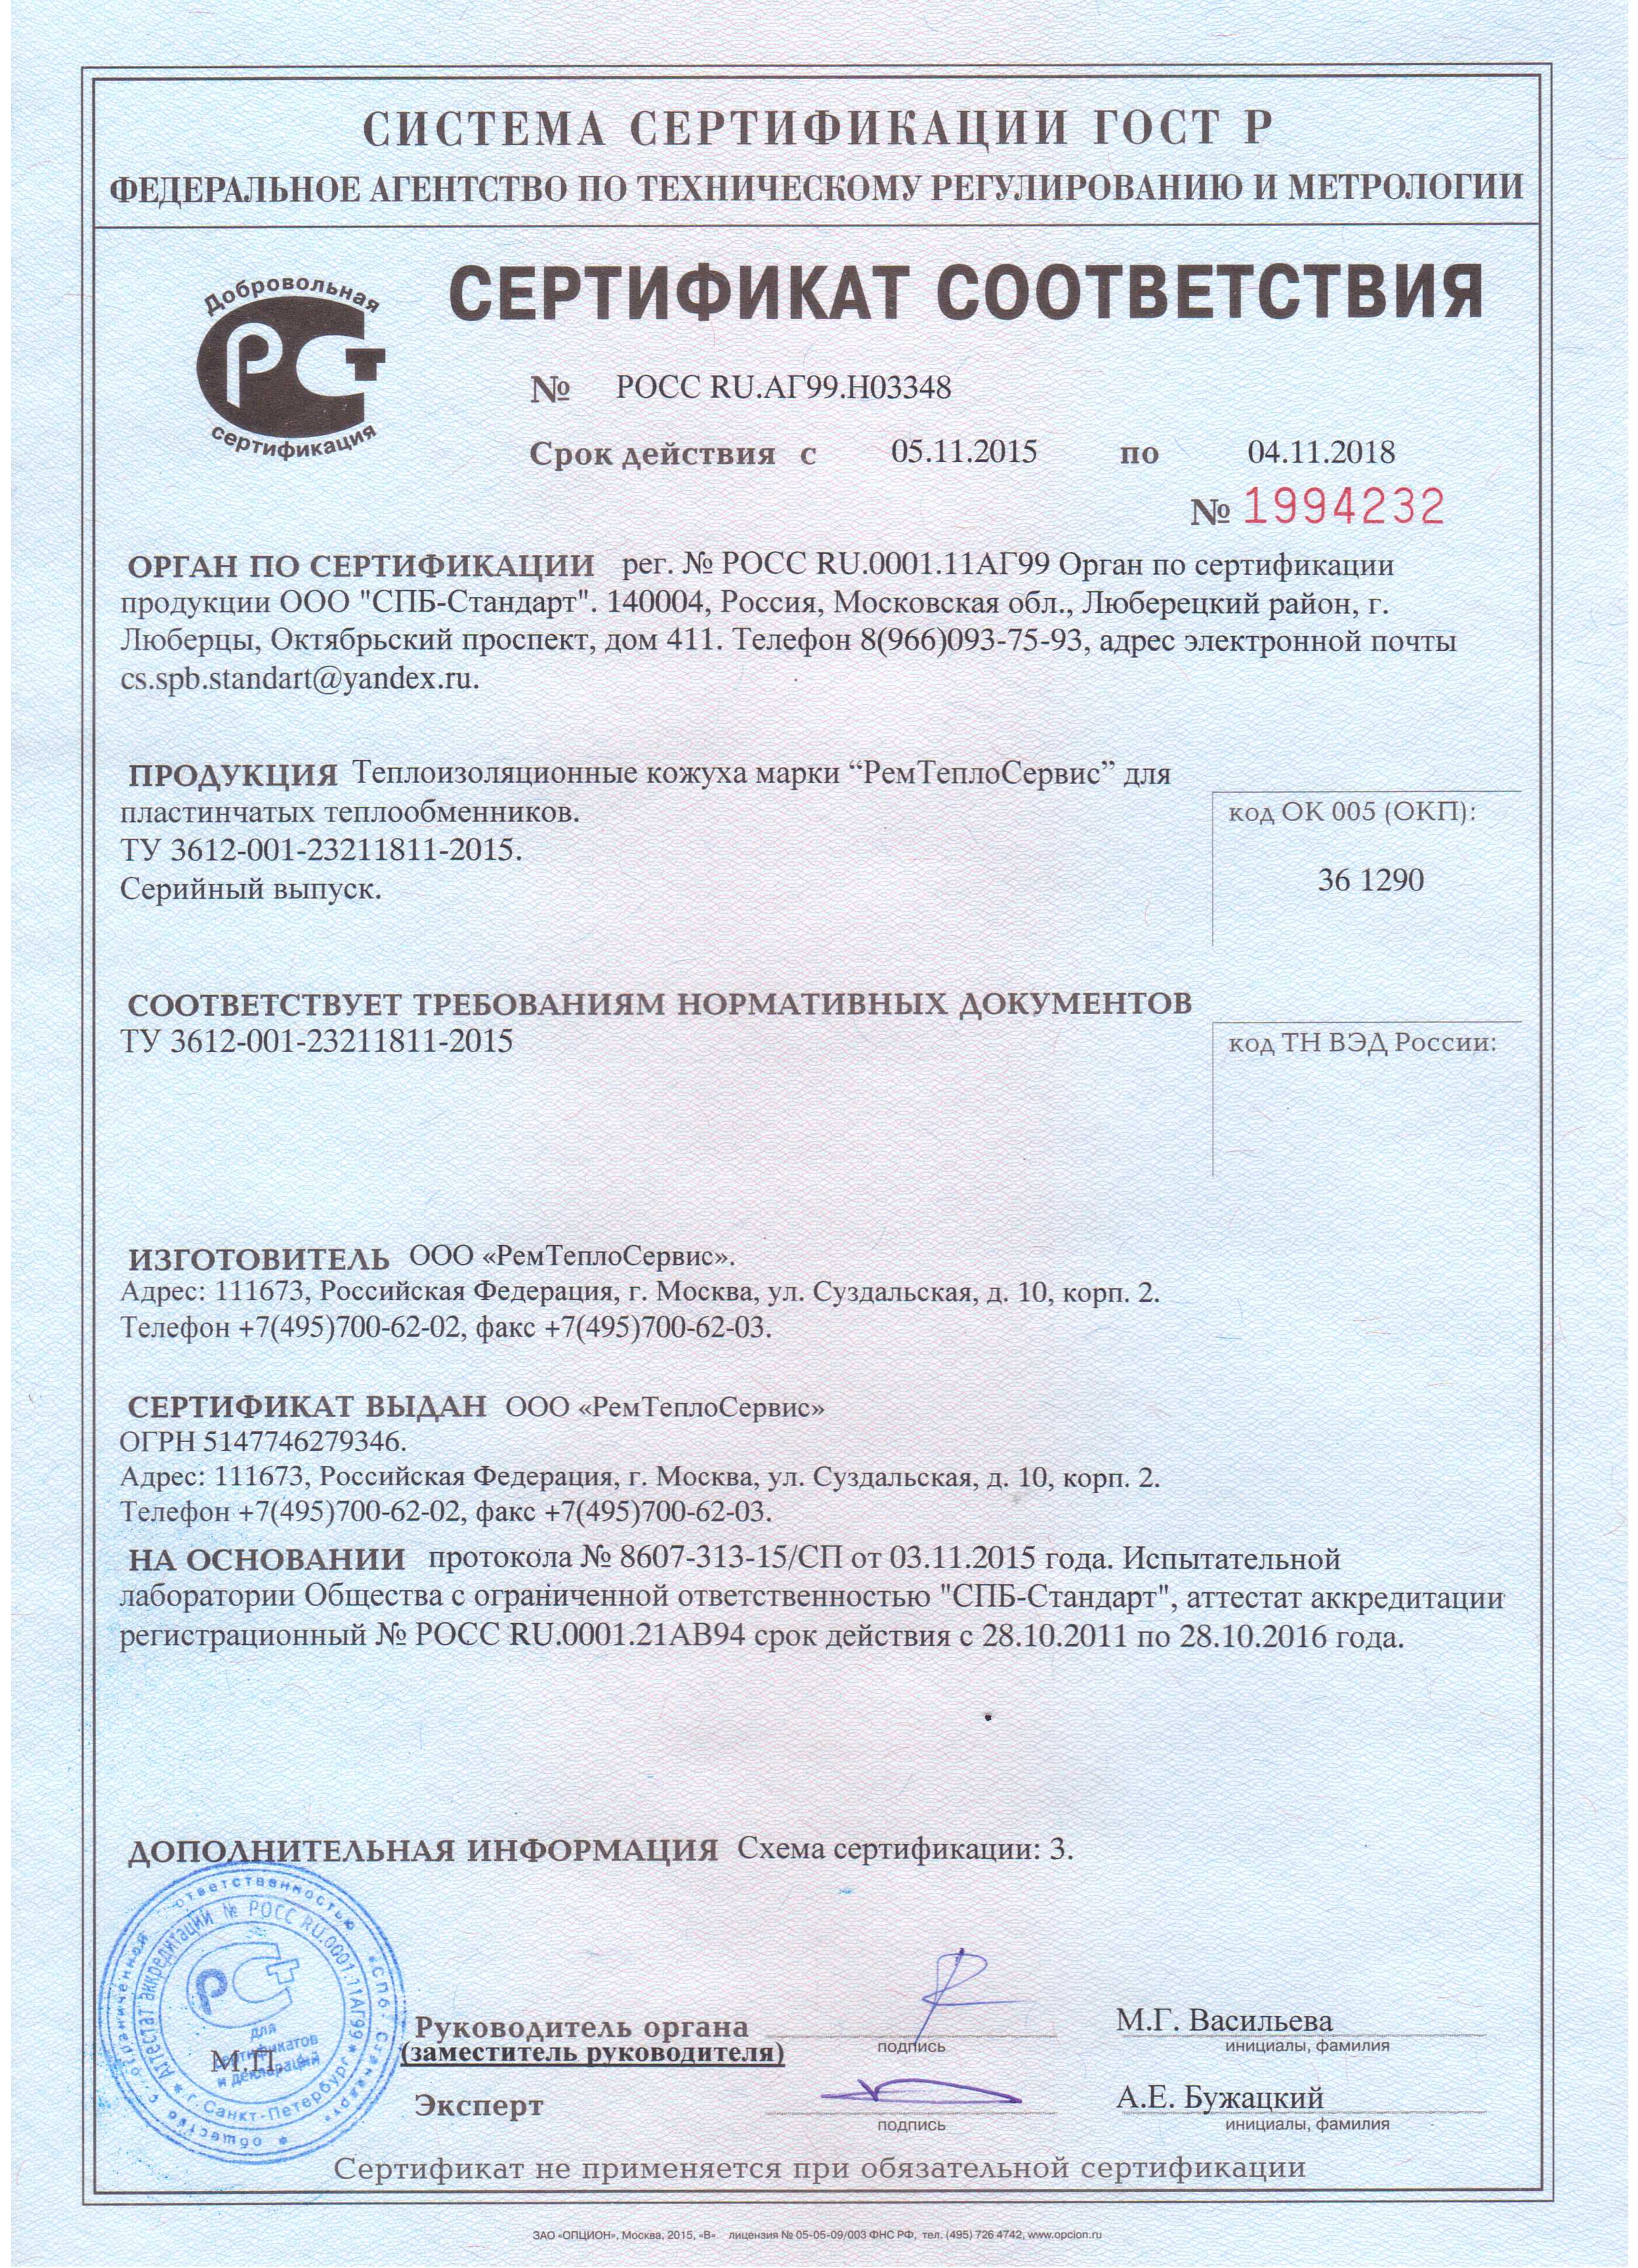 Сертификат соответствия 1994232